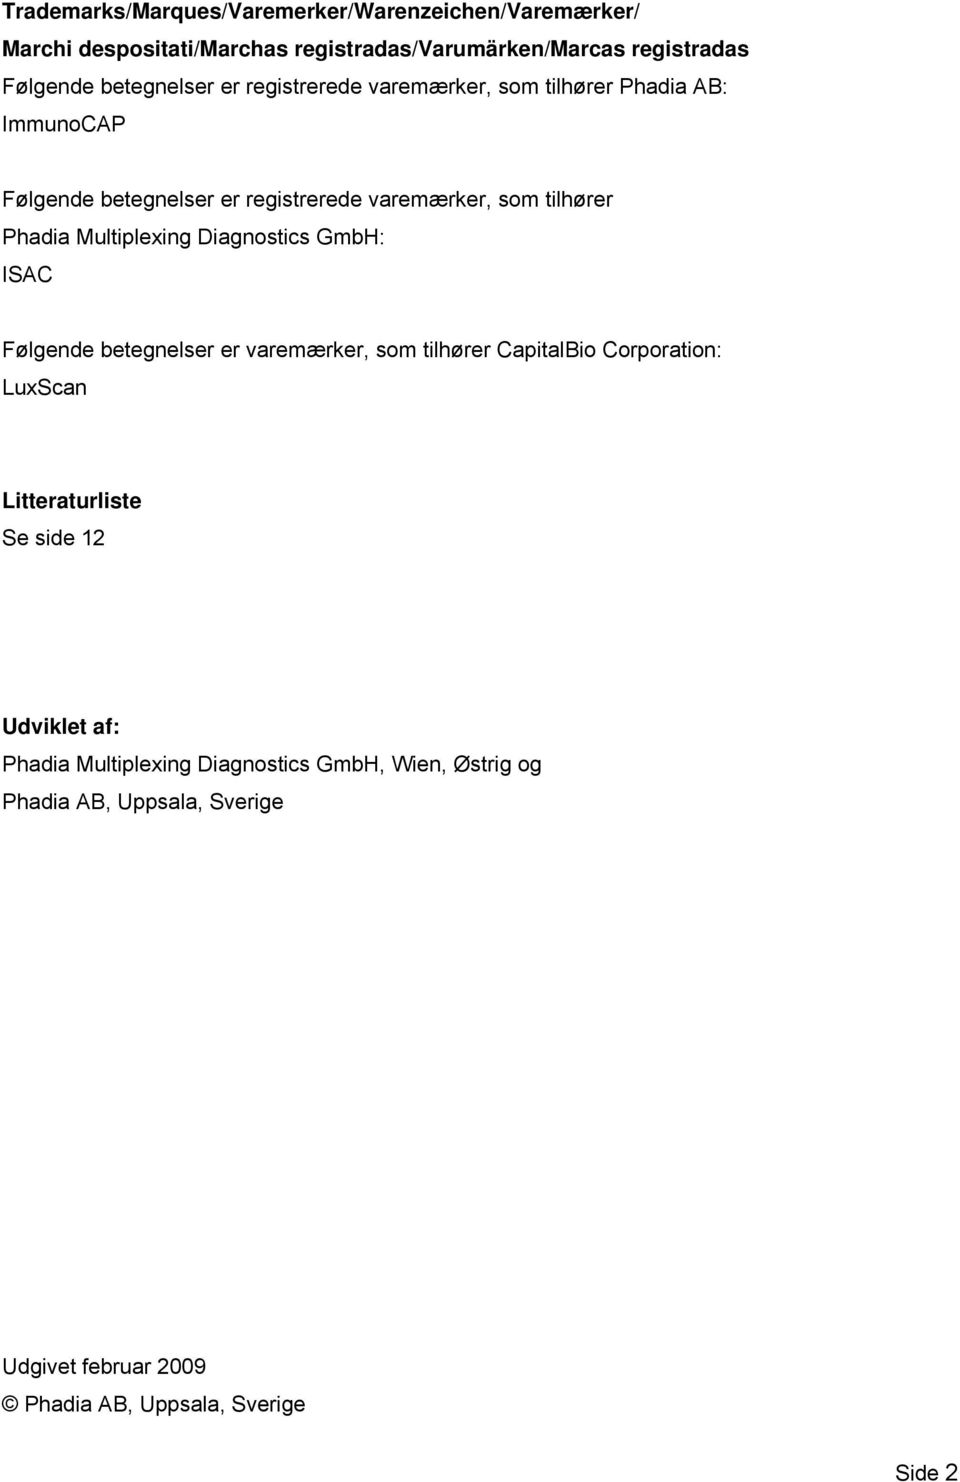 Multiplexing Diagnostics GmbH: ISAC Følgende betegnelser er varemærker, som tilhører CapitalBio Corporation: LuxScan Litteraturliste Se side